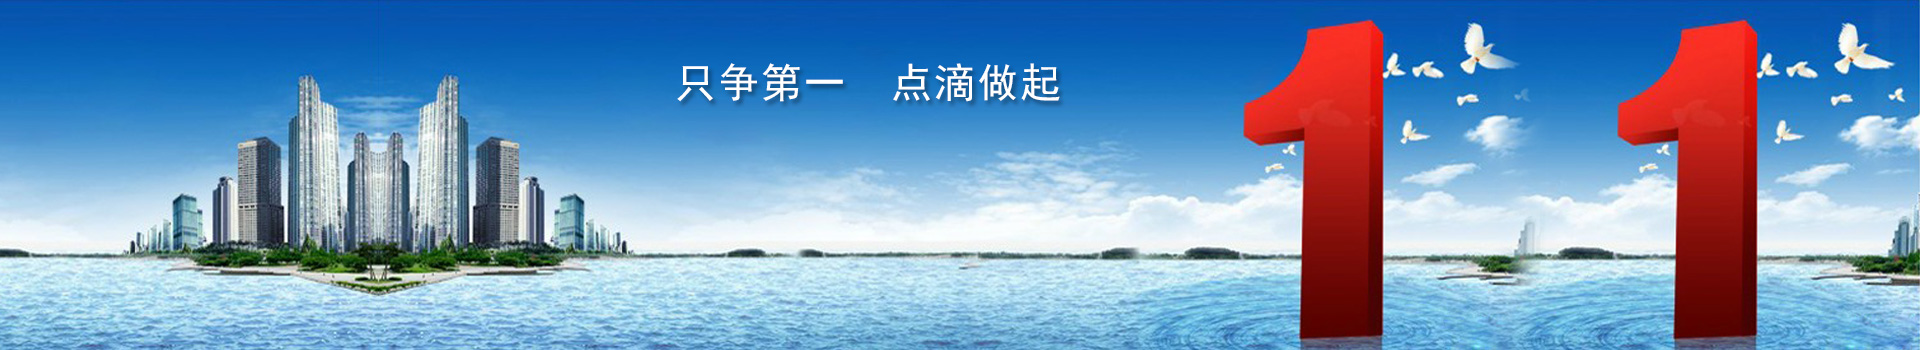 上海娱乐官网,上海娱乐平台,上海娱乐论坛,上海各区品茶工作室